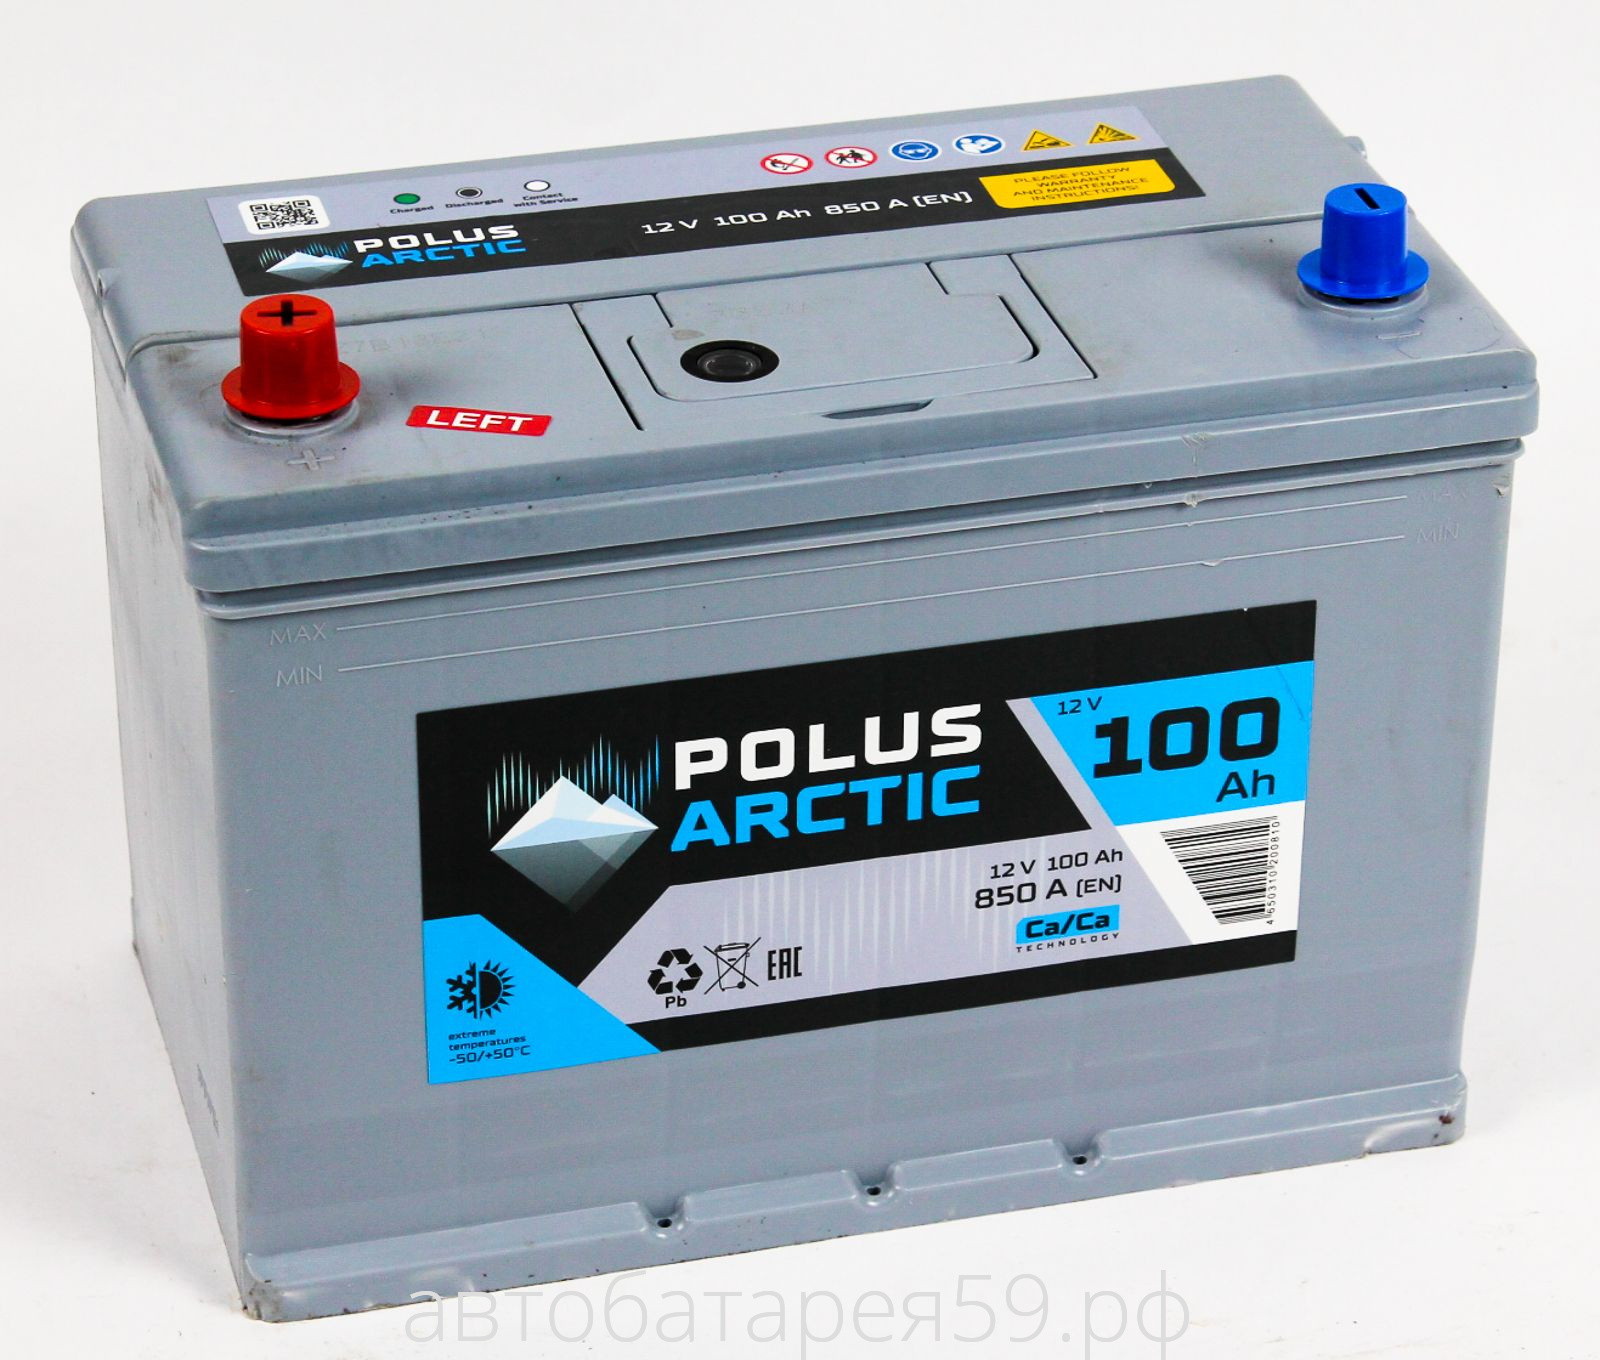 аккумулятор polus arctic 100 п.п.азия бортик   